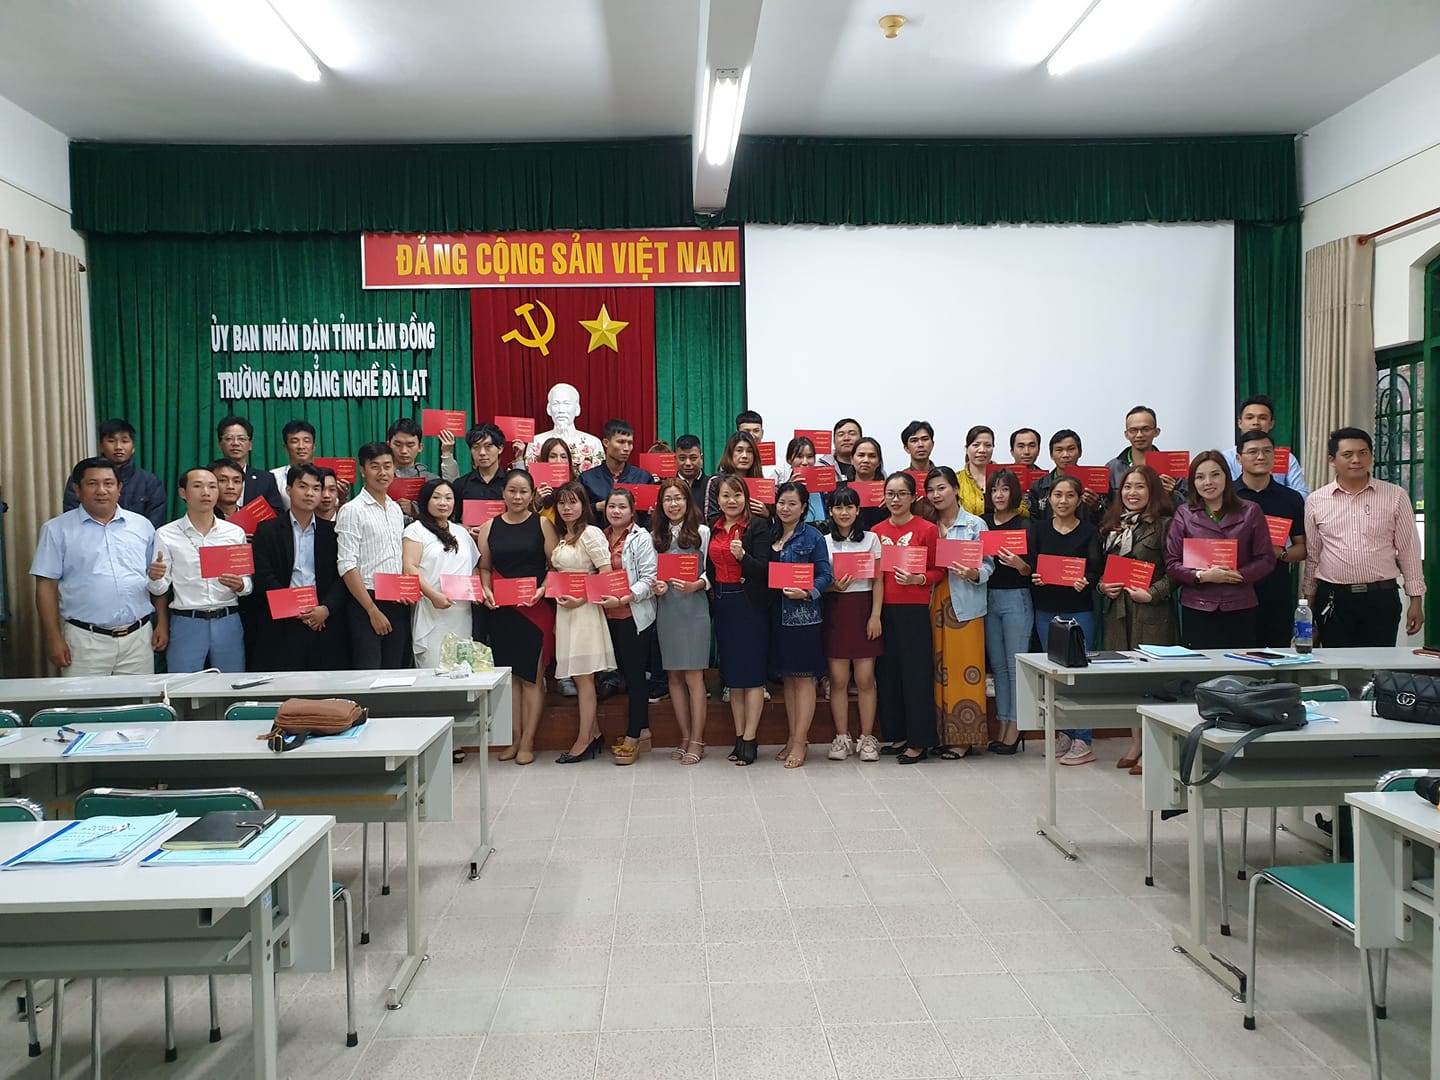 lop hoc moi gioi BDS tai Da Lat 0928070888 VCB Group đẩy mạnh mở các lớp học chứng chỉ môi giới BĐS tại Đà Lạt